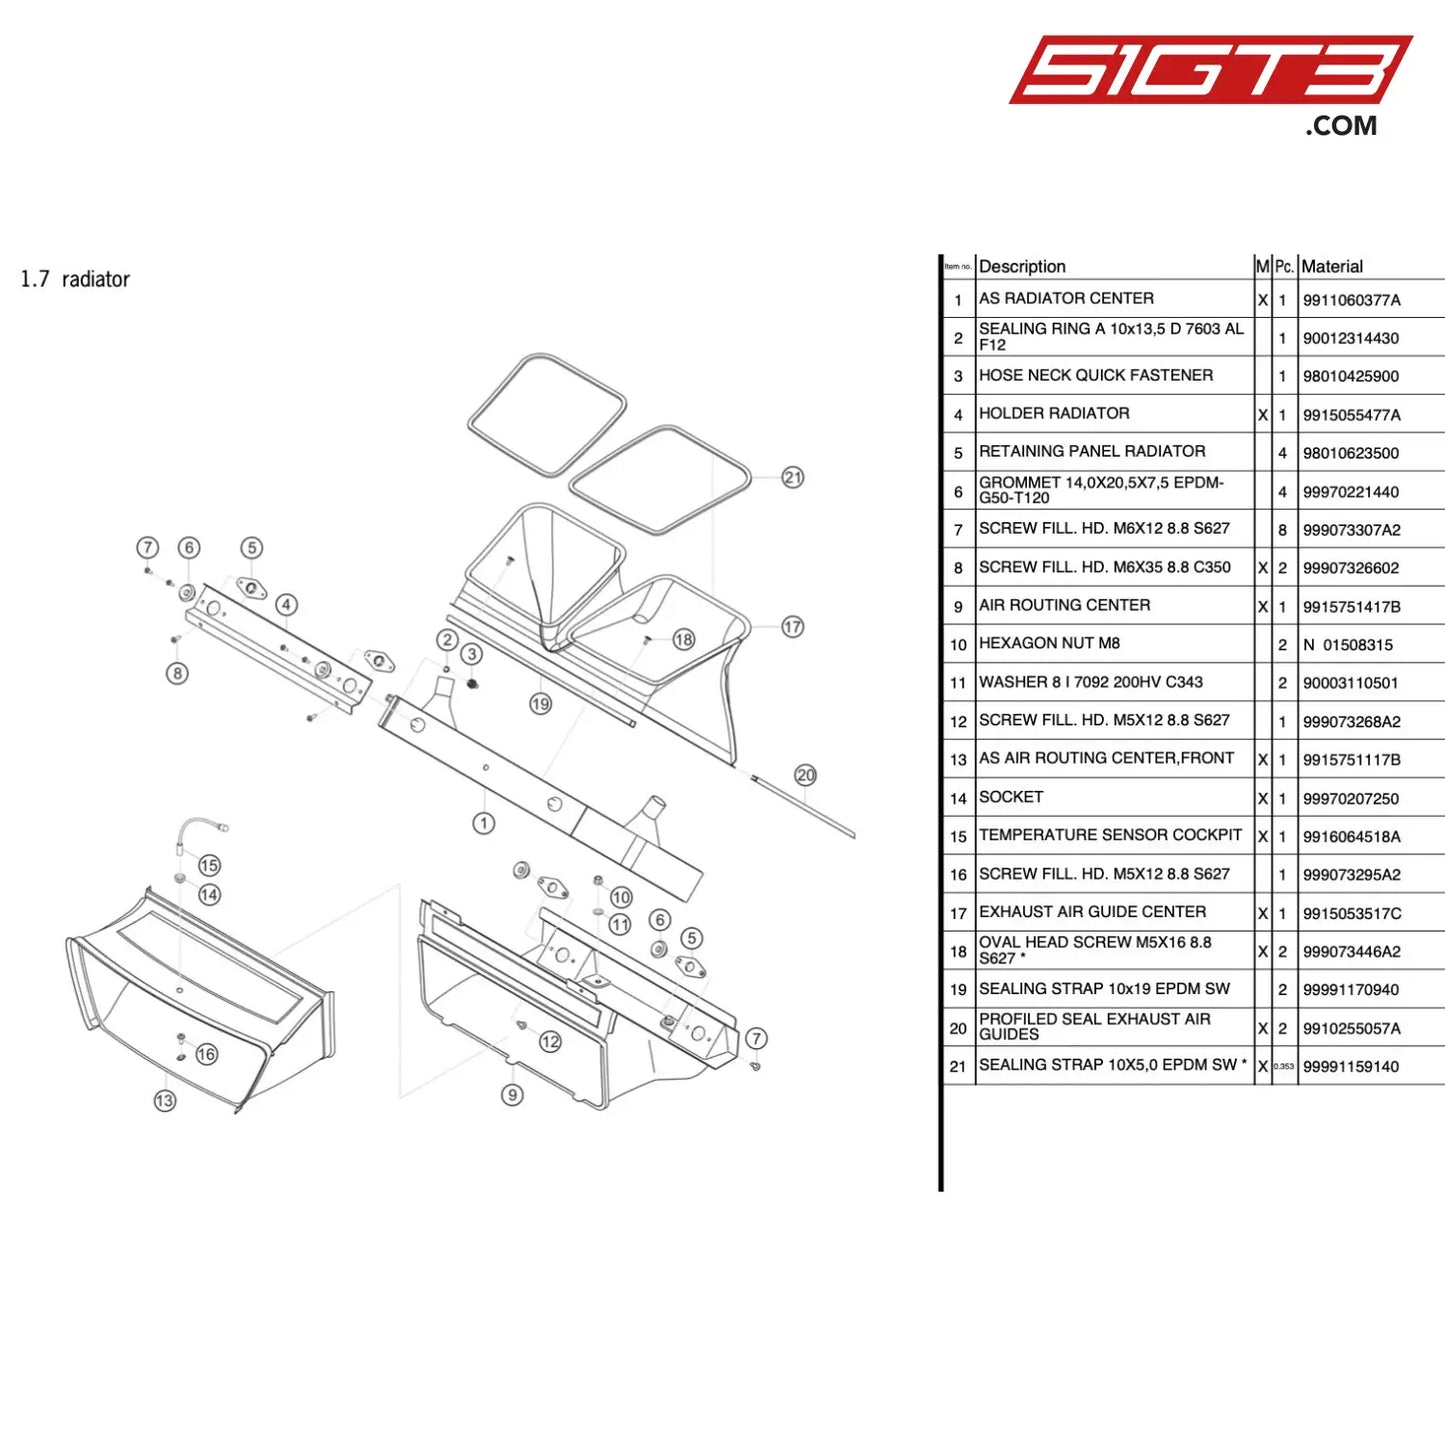 Sealing Strap 10X5 0 Epdm Sw * - 99991159140 [Porsche 911 Gt3 R Type 991 (Gen 1)] Radiator